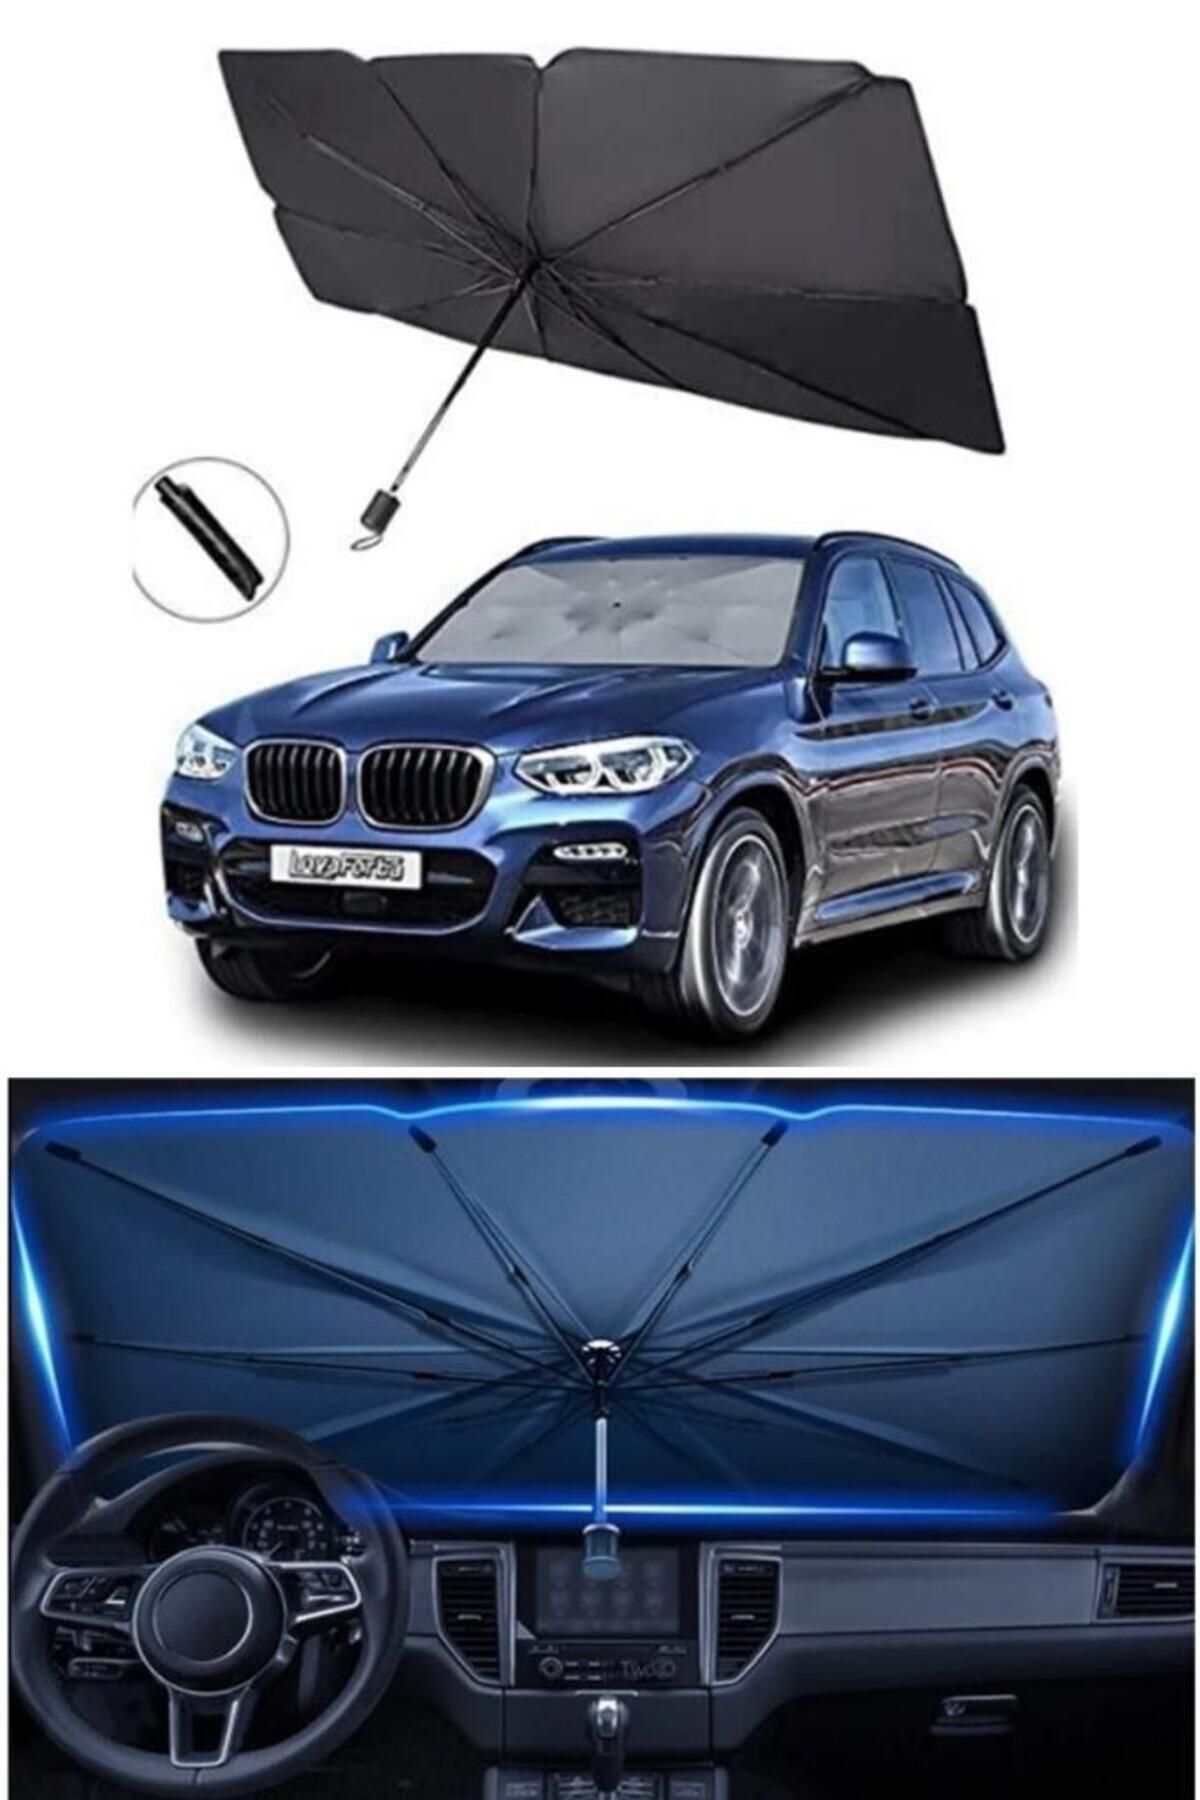 Duffa Araba Ön Cam Güneşlik Katlanabilir Güneşlik Şemsiye Ön Cam Gölgelik Büyük Boy 80 Cm X 135 Cm